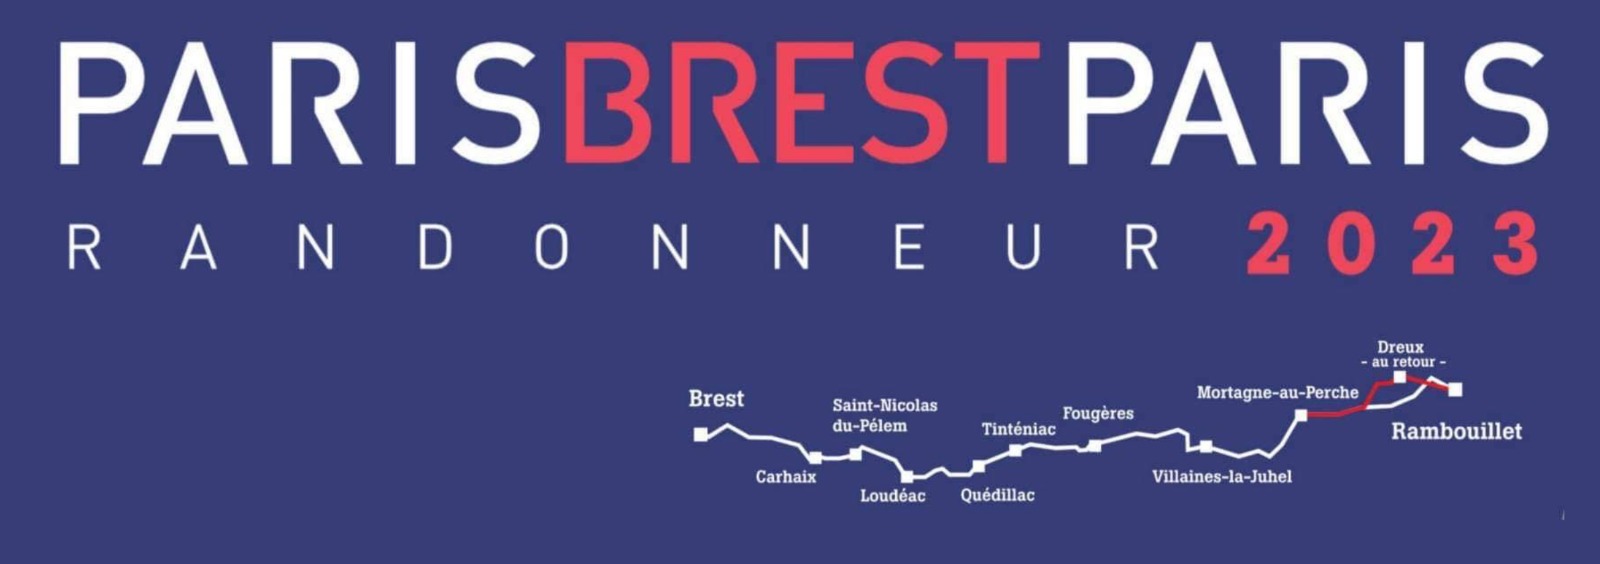 Paris Brest Paris randonneurs 2023